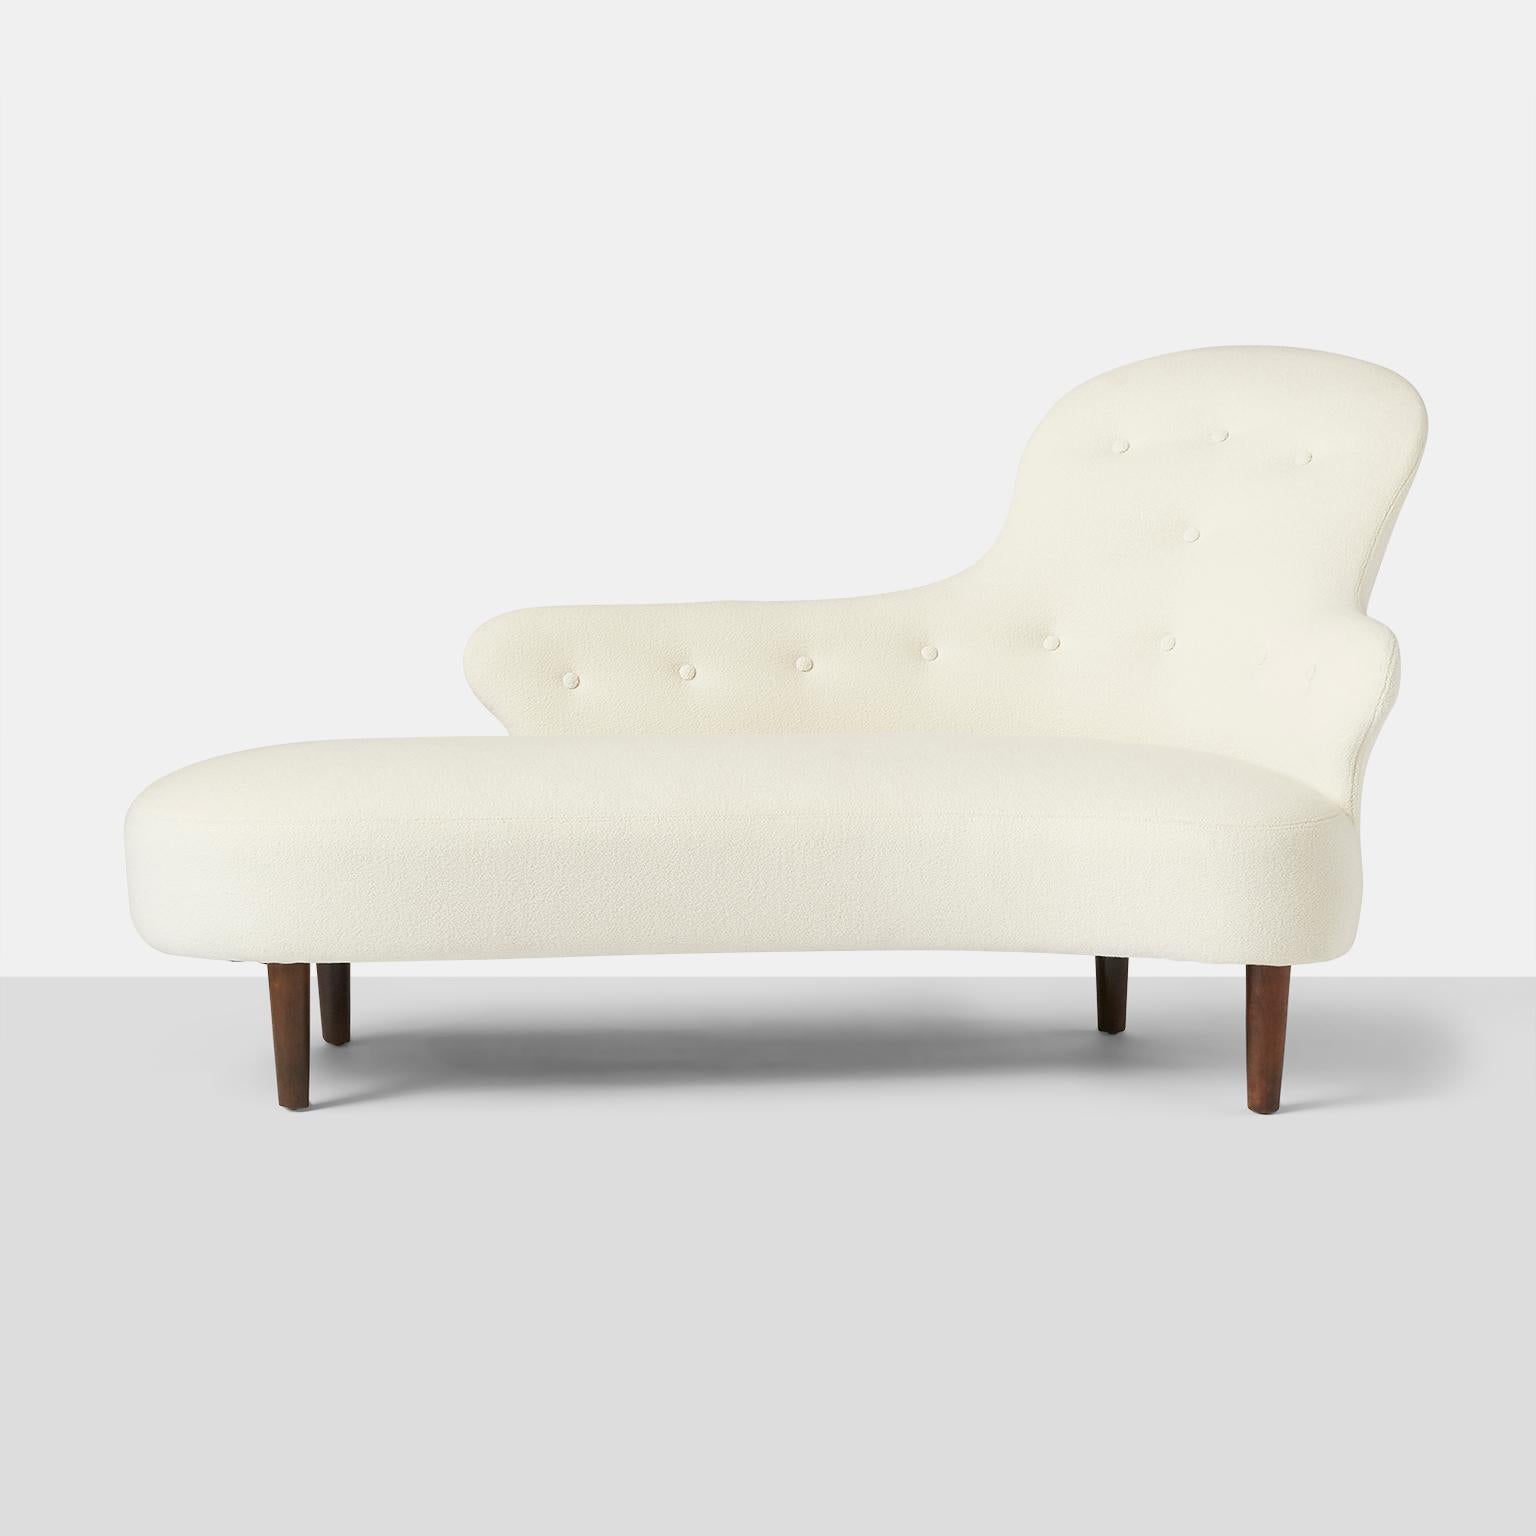 Schwedische Chaise Lounge (Skandinavische Moderne)